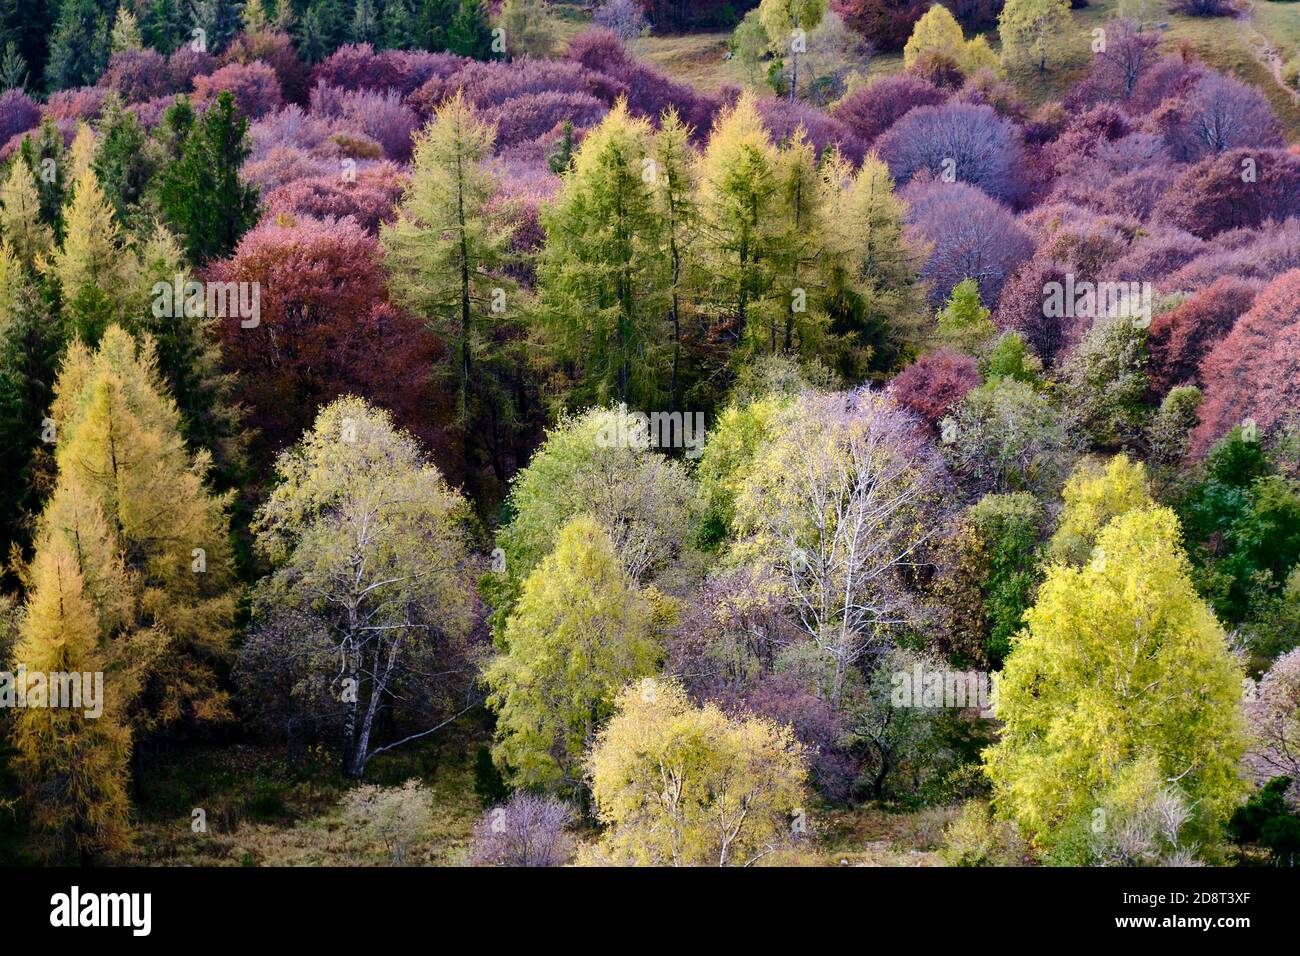 Solo Backpacker Trekking auf dem Berg im Herbst Trought Laub, See, gelb und orange Farben. Die fantastischen Farben und Landschaftsbilder in dieser Saison. Stockfoto